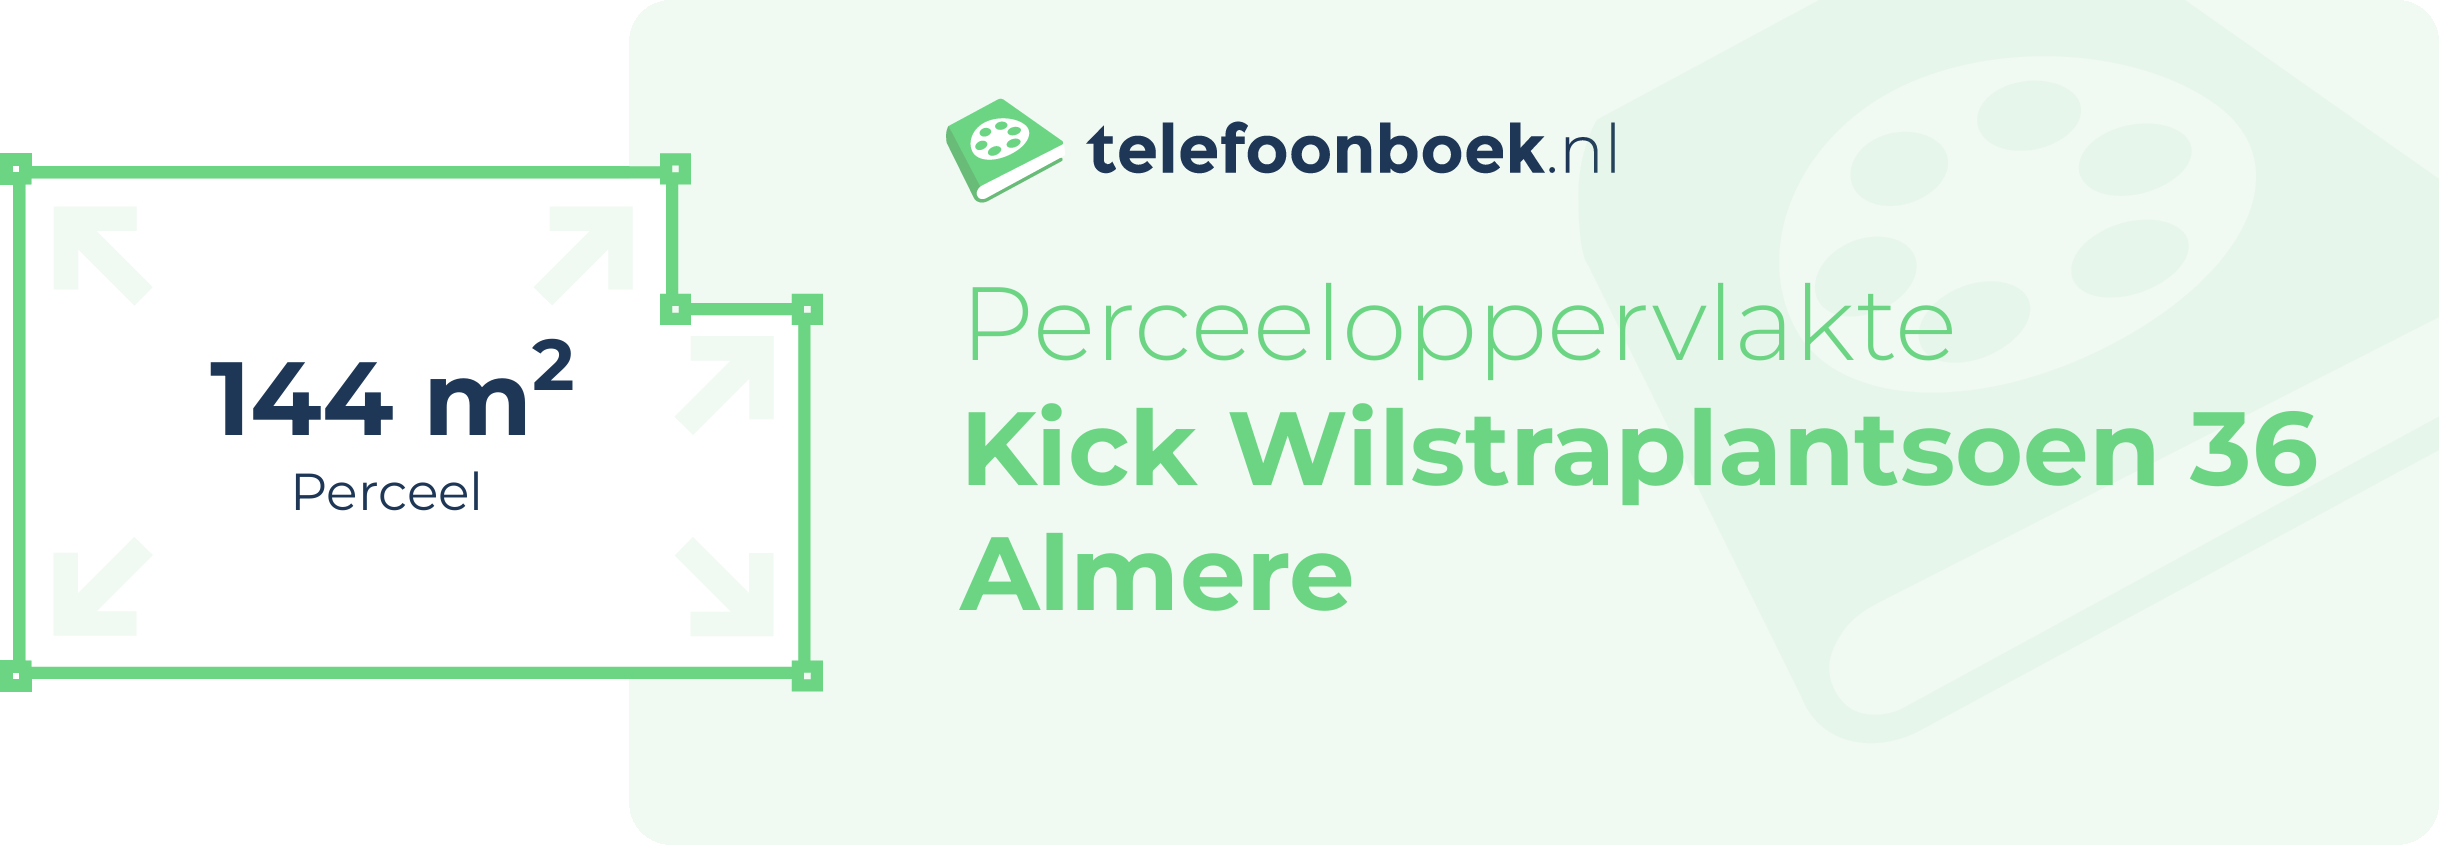 Perceeloppervlakte Kick Wilstraplantsoen 36 Almere